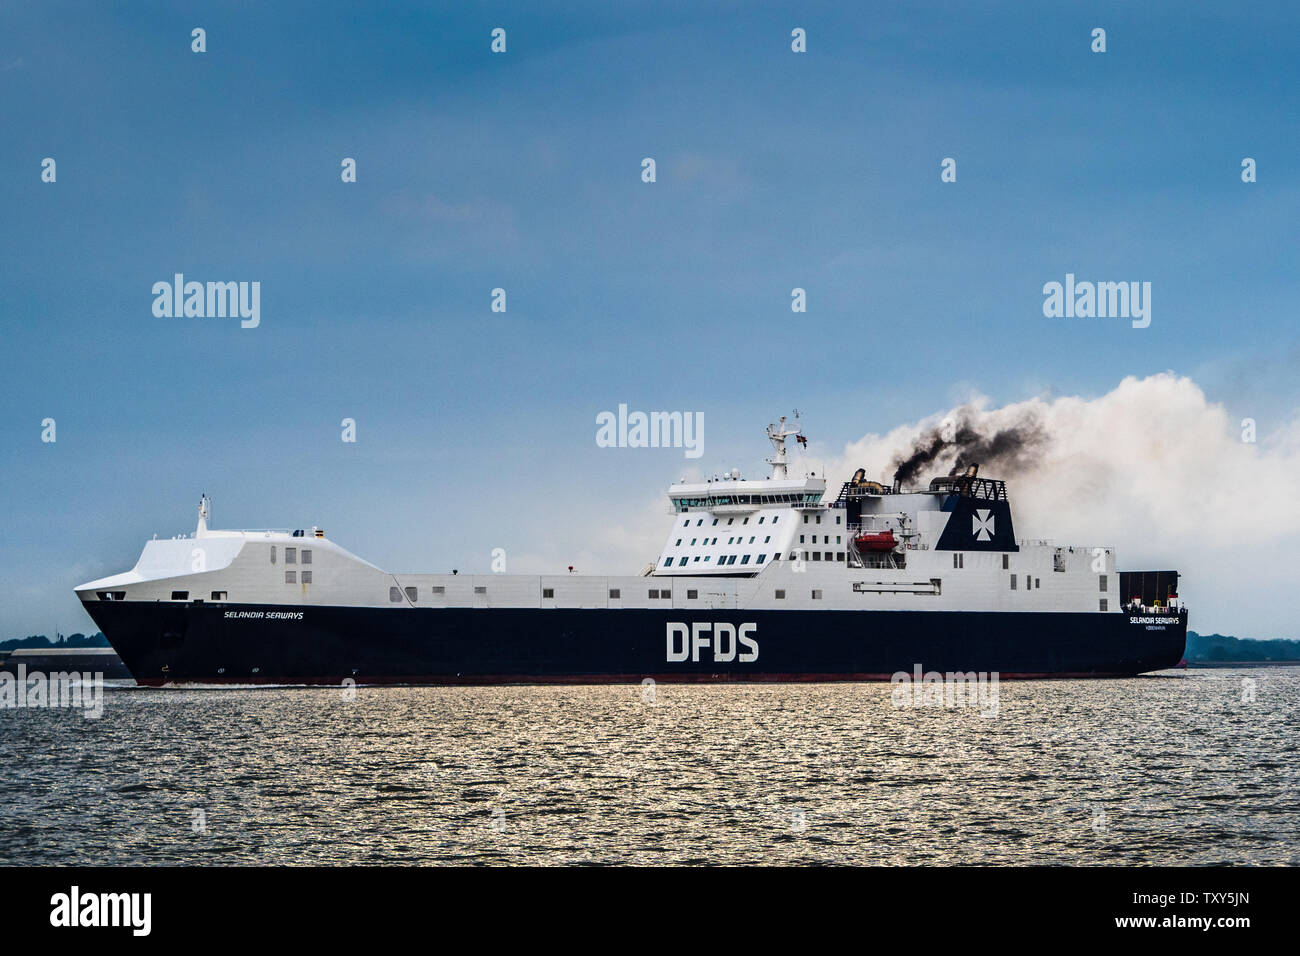 Spedizione di inquinamento atmosferico - diesel fumo emesso da un traghetto DFDS lasciando Felixstowe Port Regno Unito è accentuata dalle nuvole bianche dietro Foto Stock